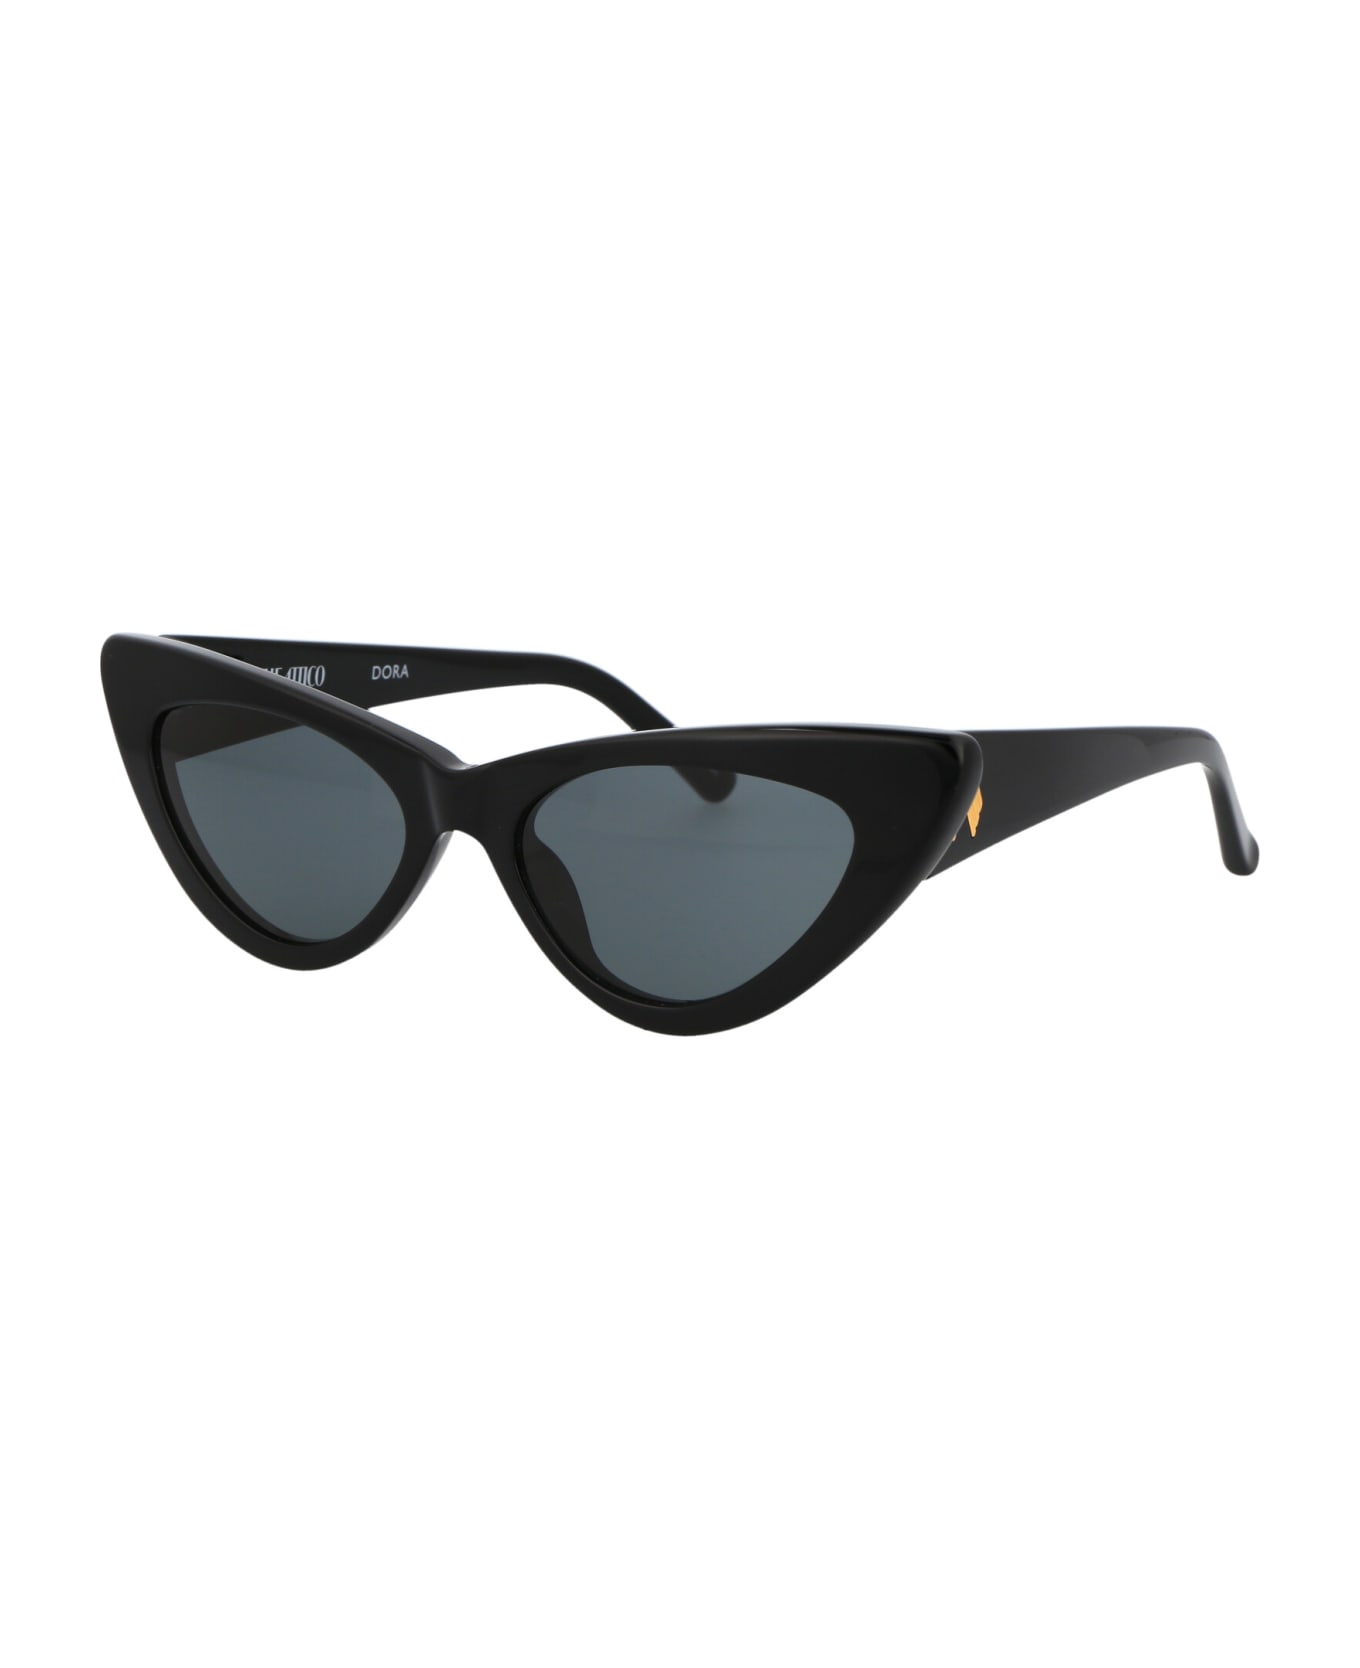 The Attico Dora Sunglasses - BLACK/YELLOWGOLD/GREY